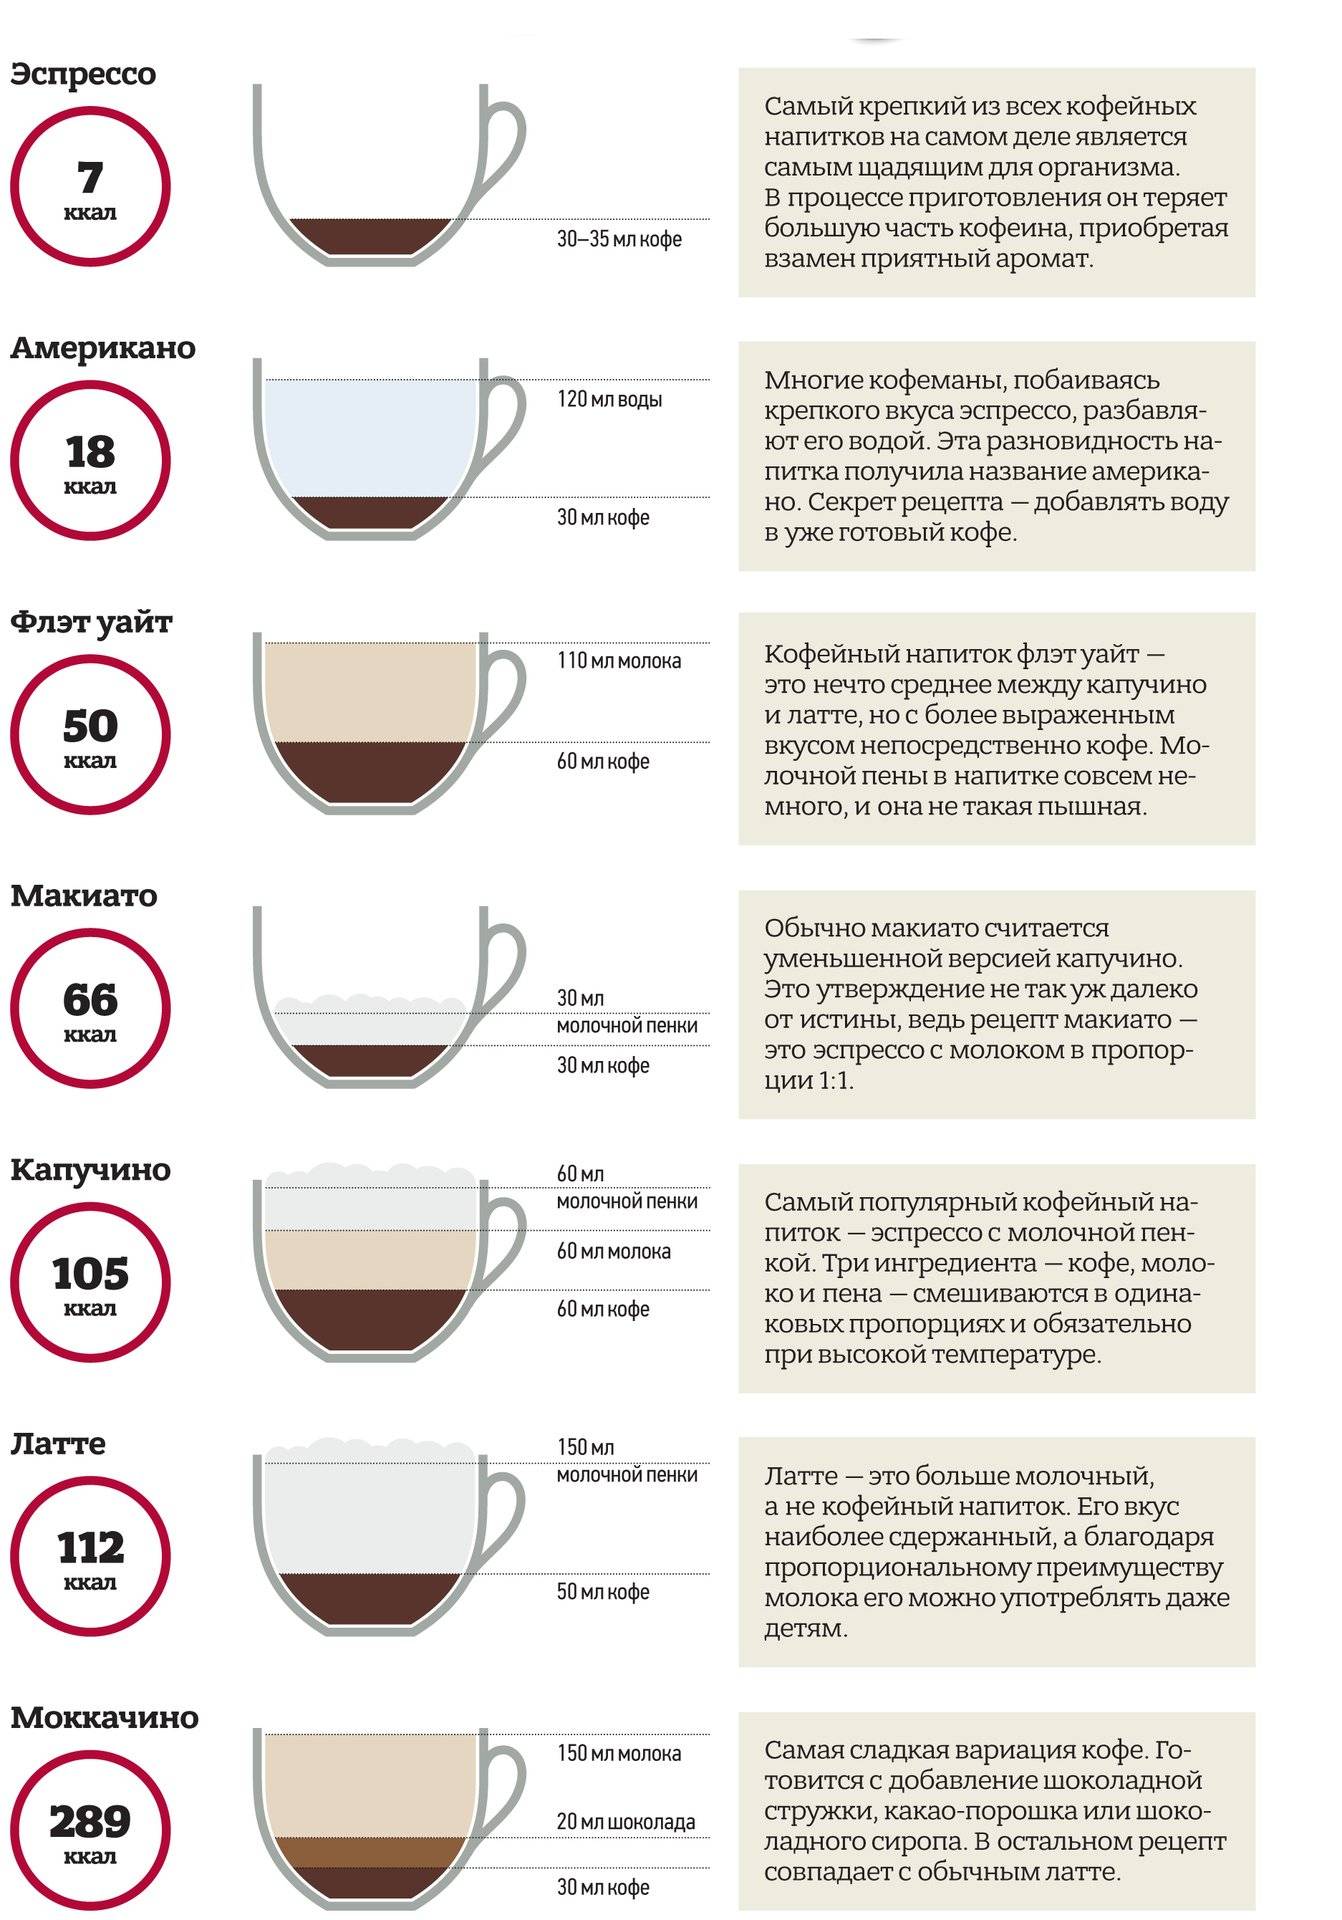 Как правильно приготовить кофе-капучино и как его рекомендуется пить?